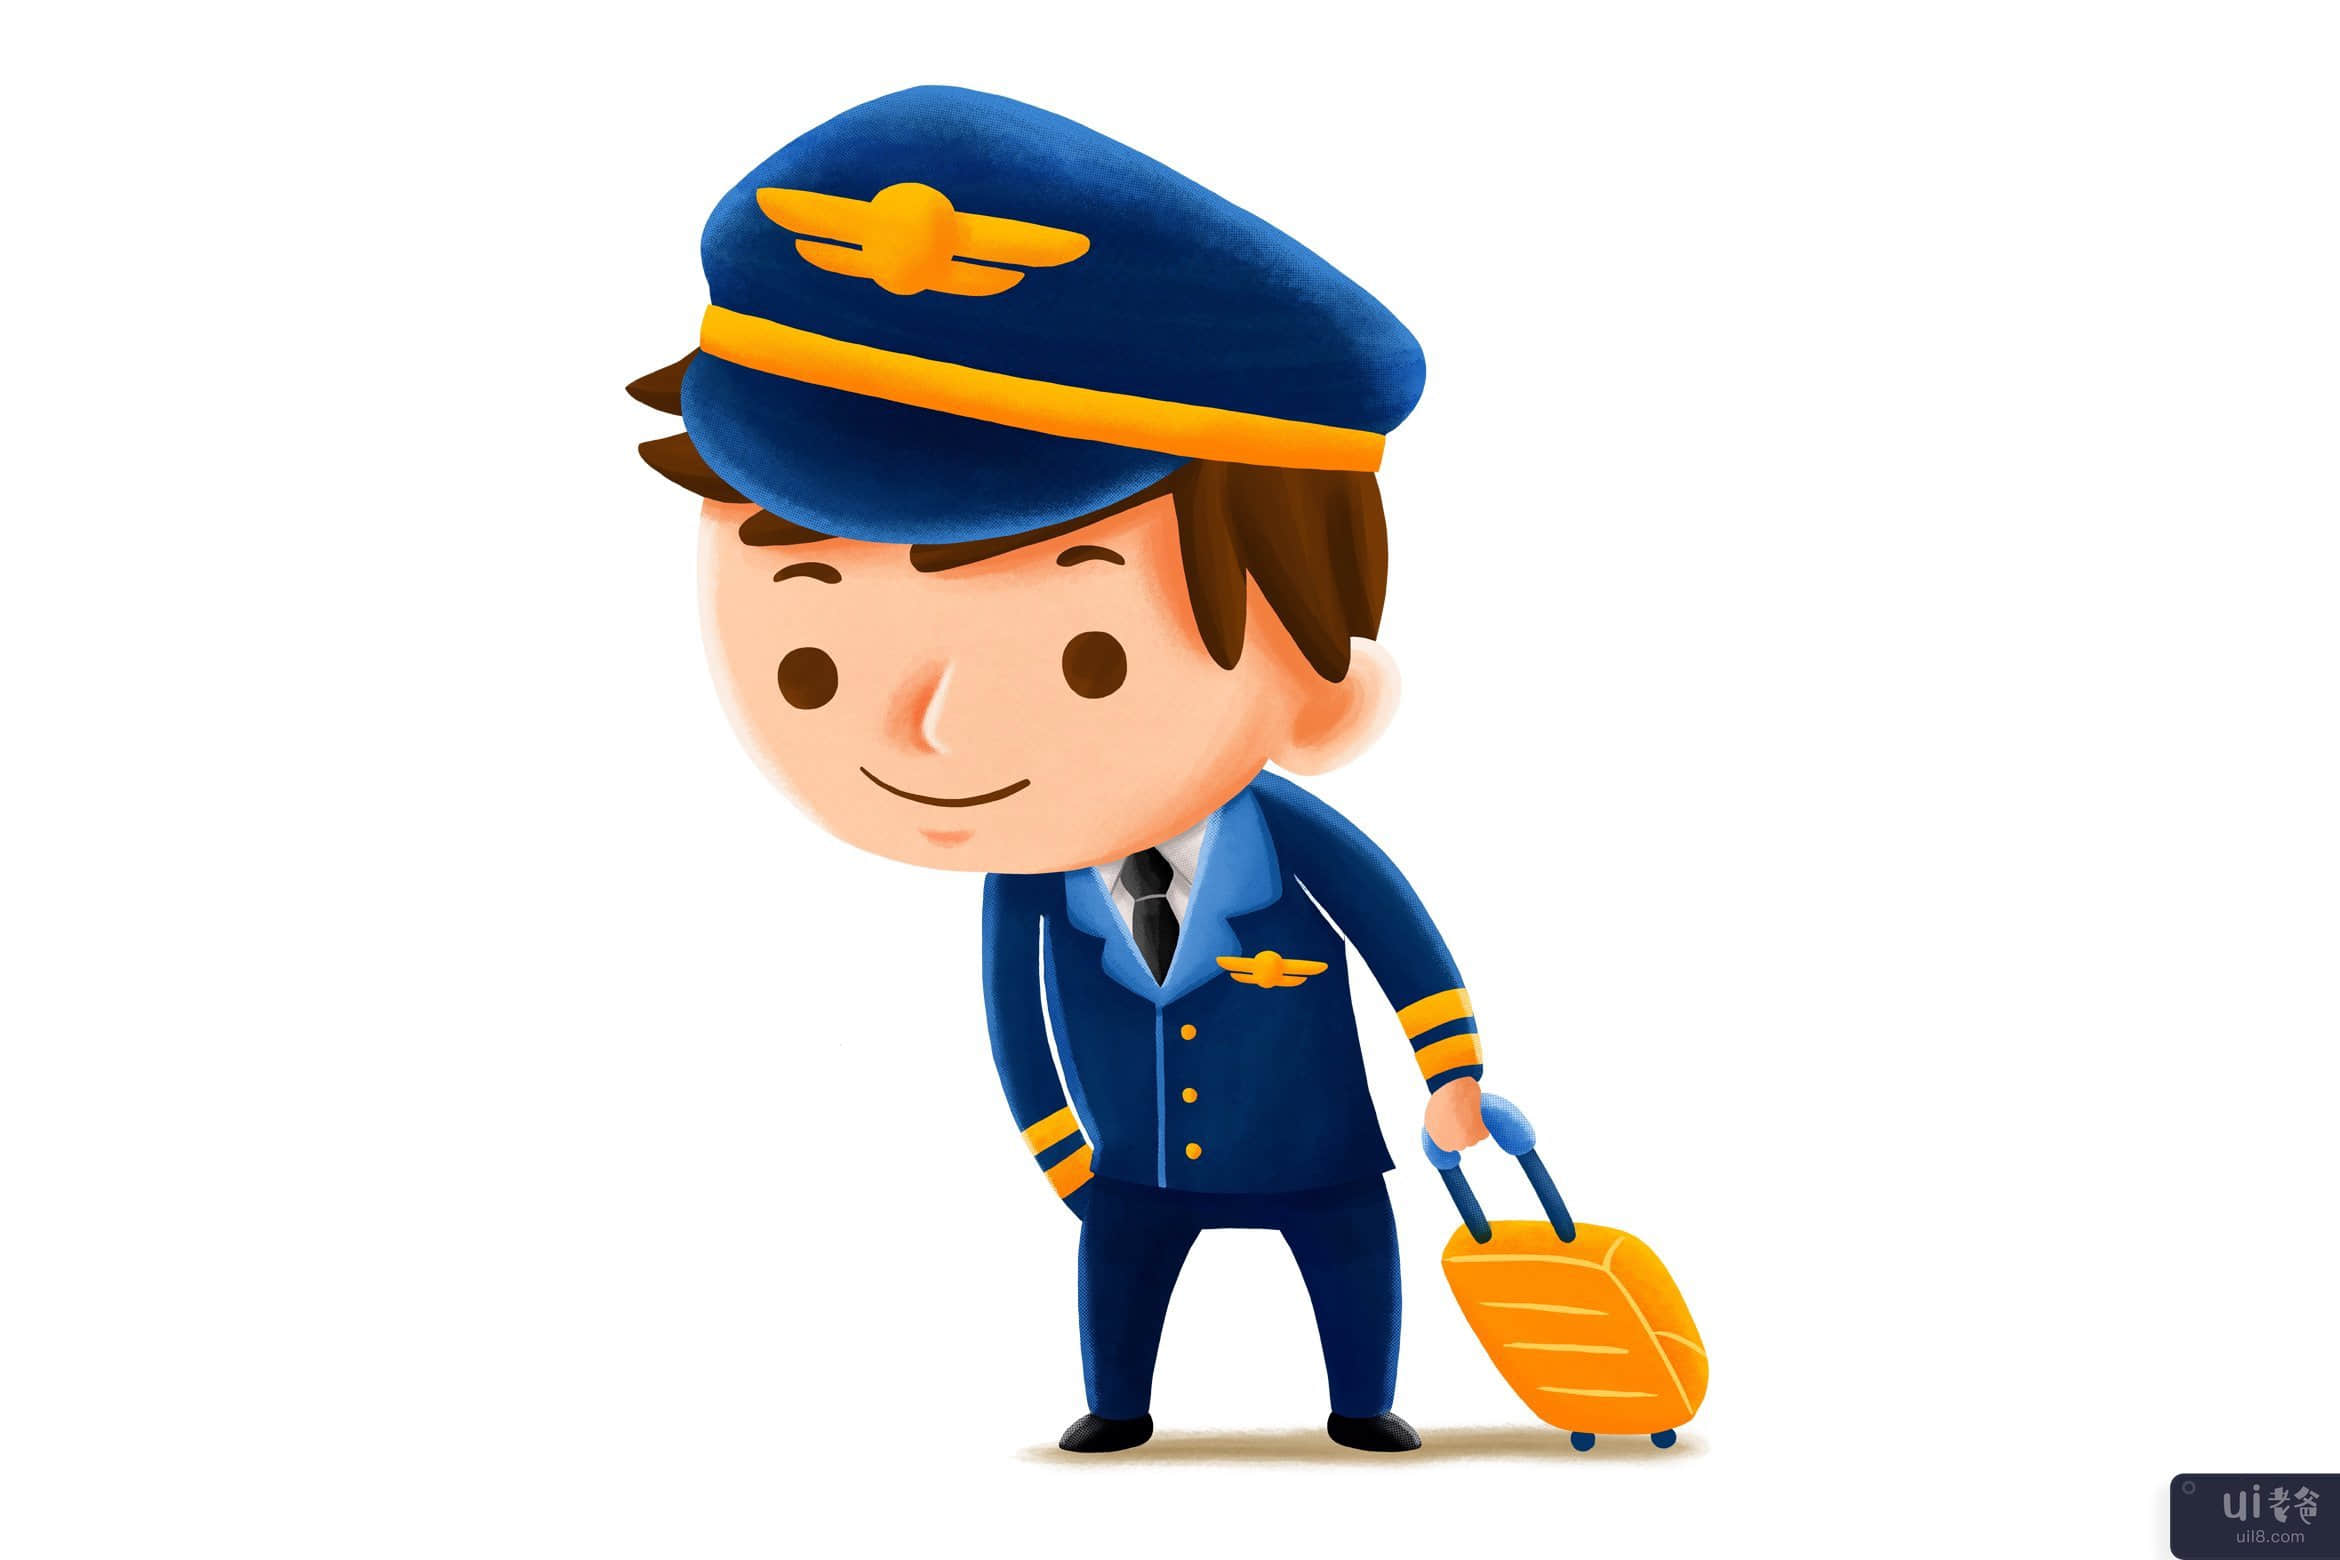 飞行员职业 — 儿童插画(Pilot Profession — Kids Illustration)插图